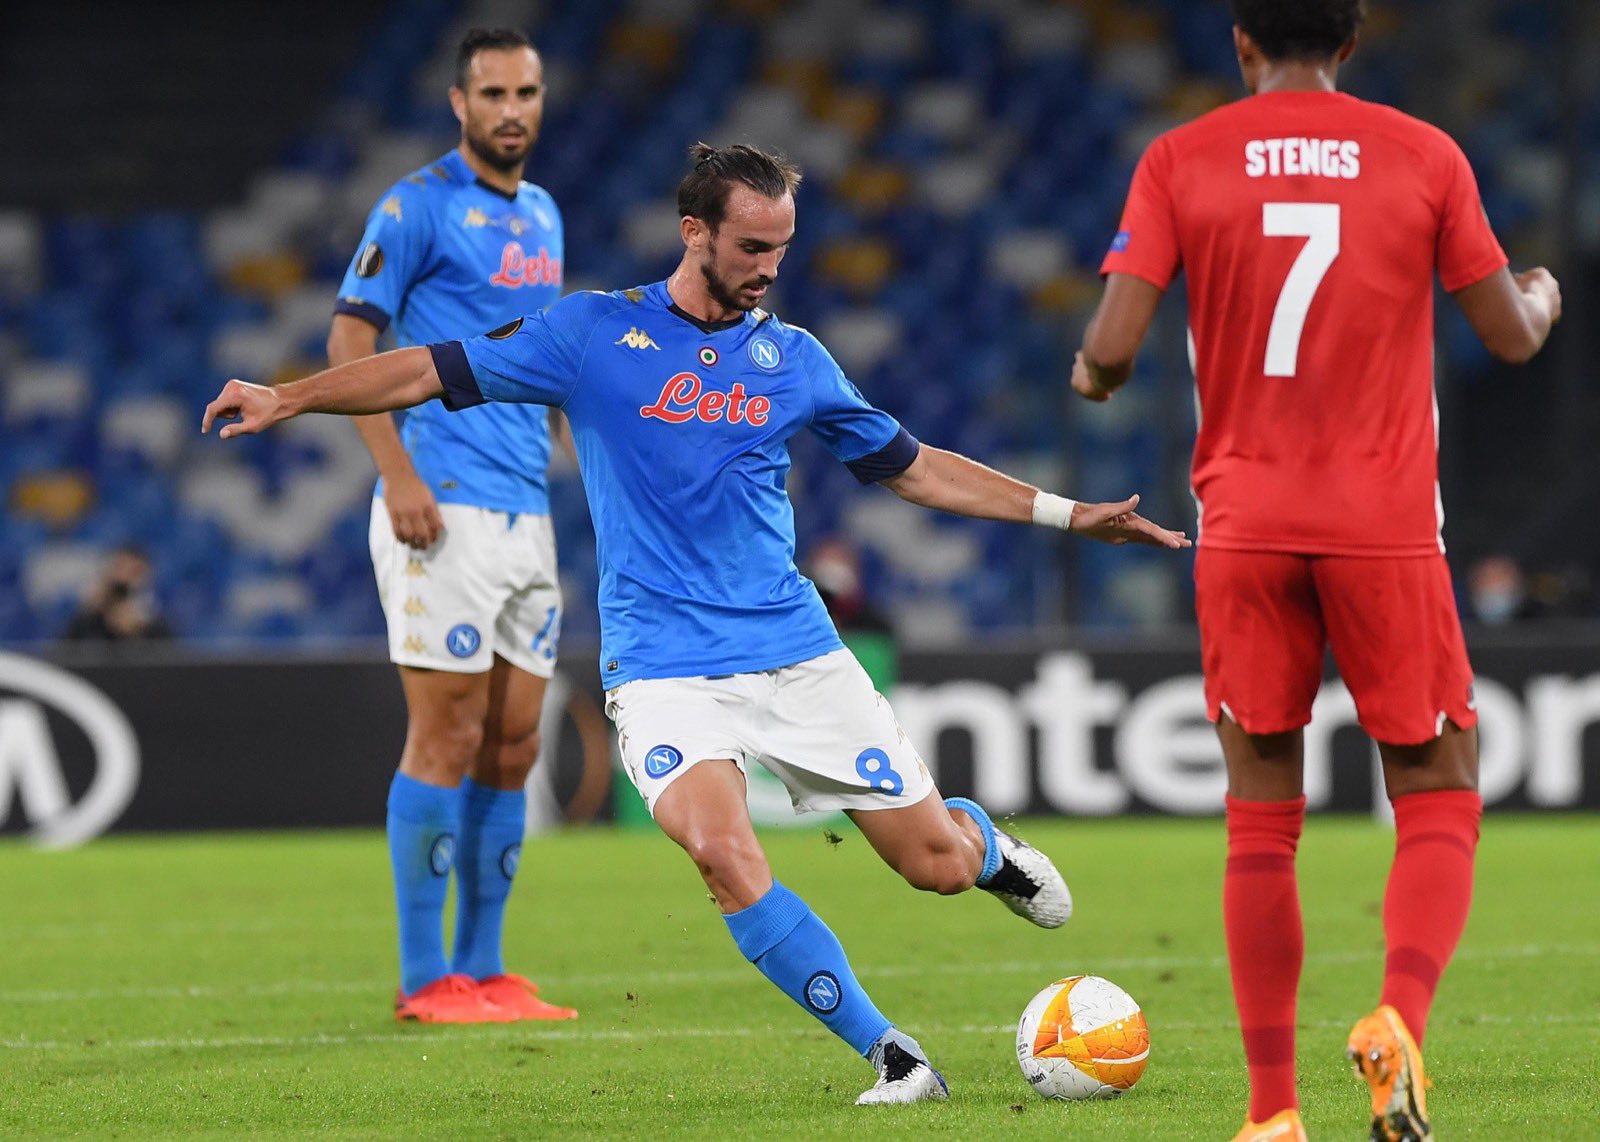 “Il Napoli perde una partita dominata per possesso palla ma risolta dal contropiede corsaro”